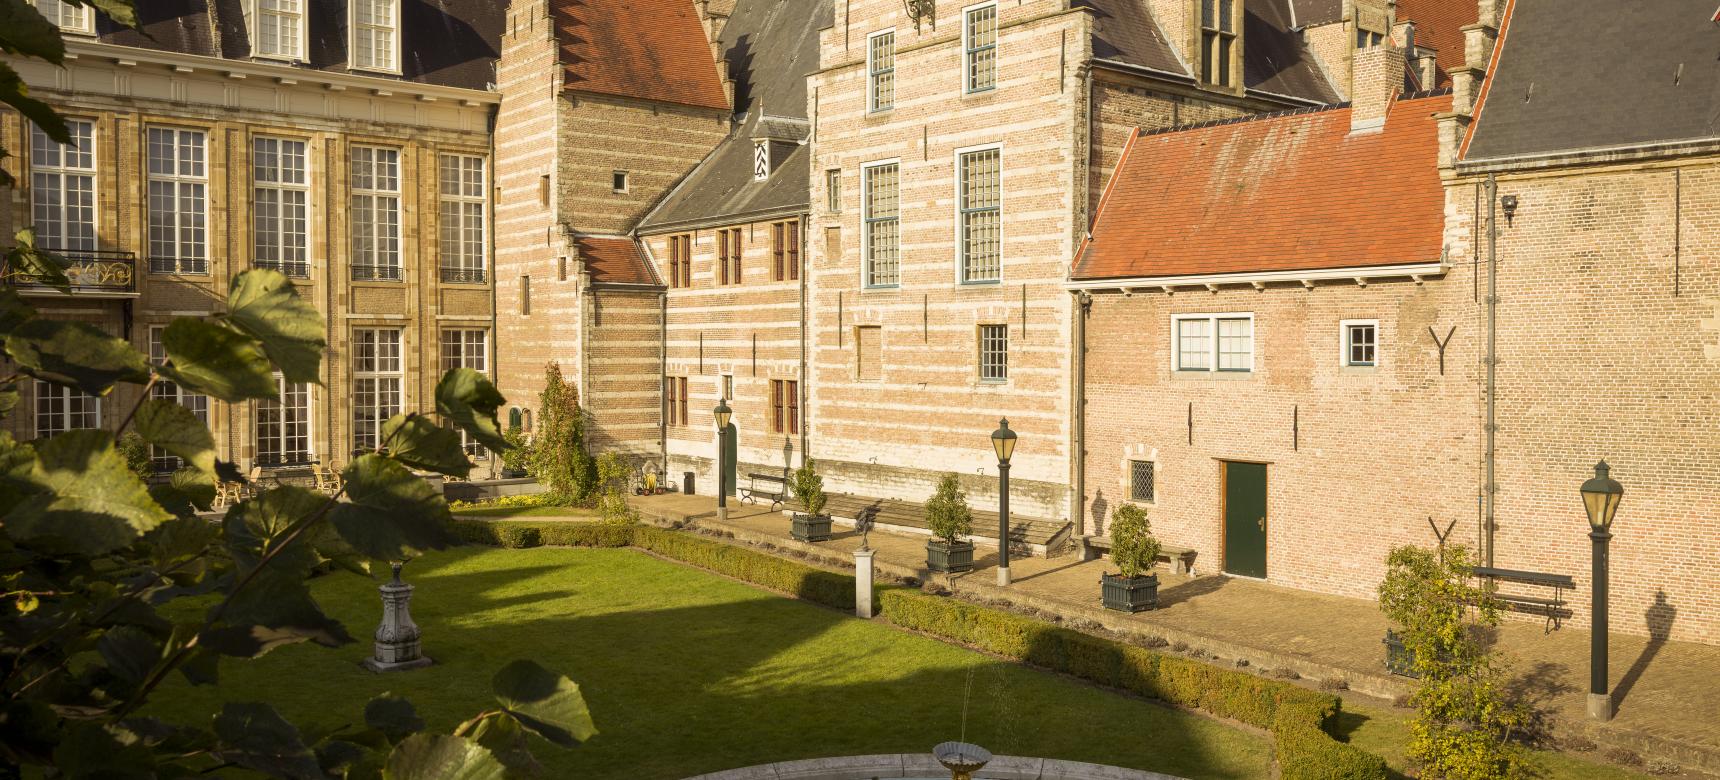 Bergen op Zoom - museum Markiezenhof